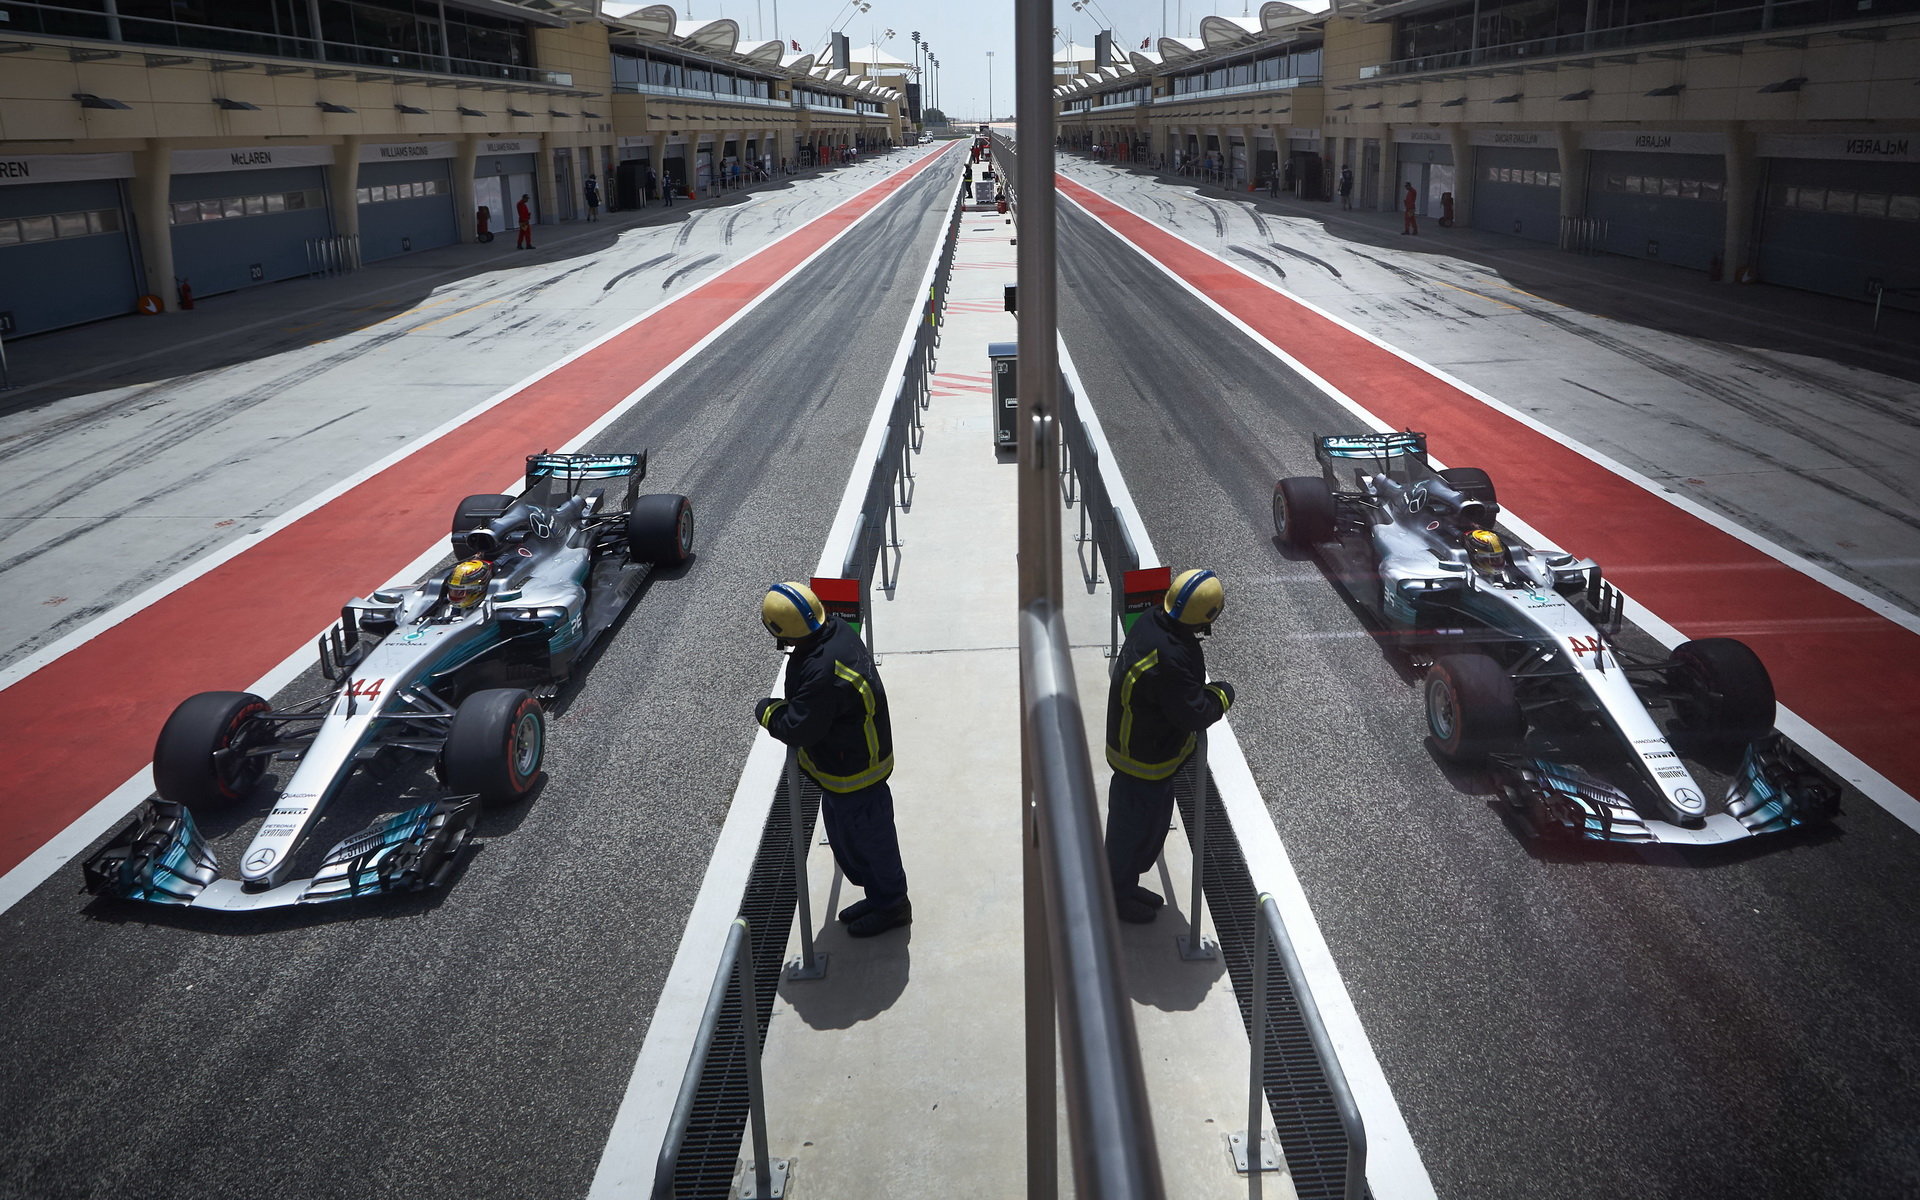 Lewis Hamilton při sezónních testech v Bahrajnu